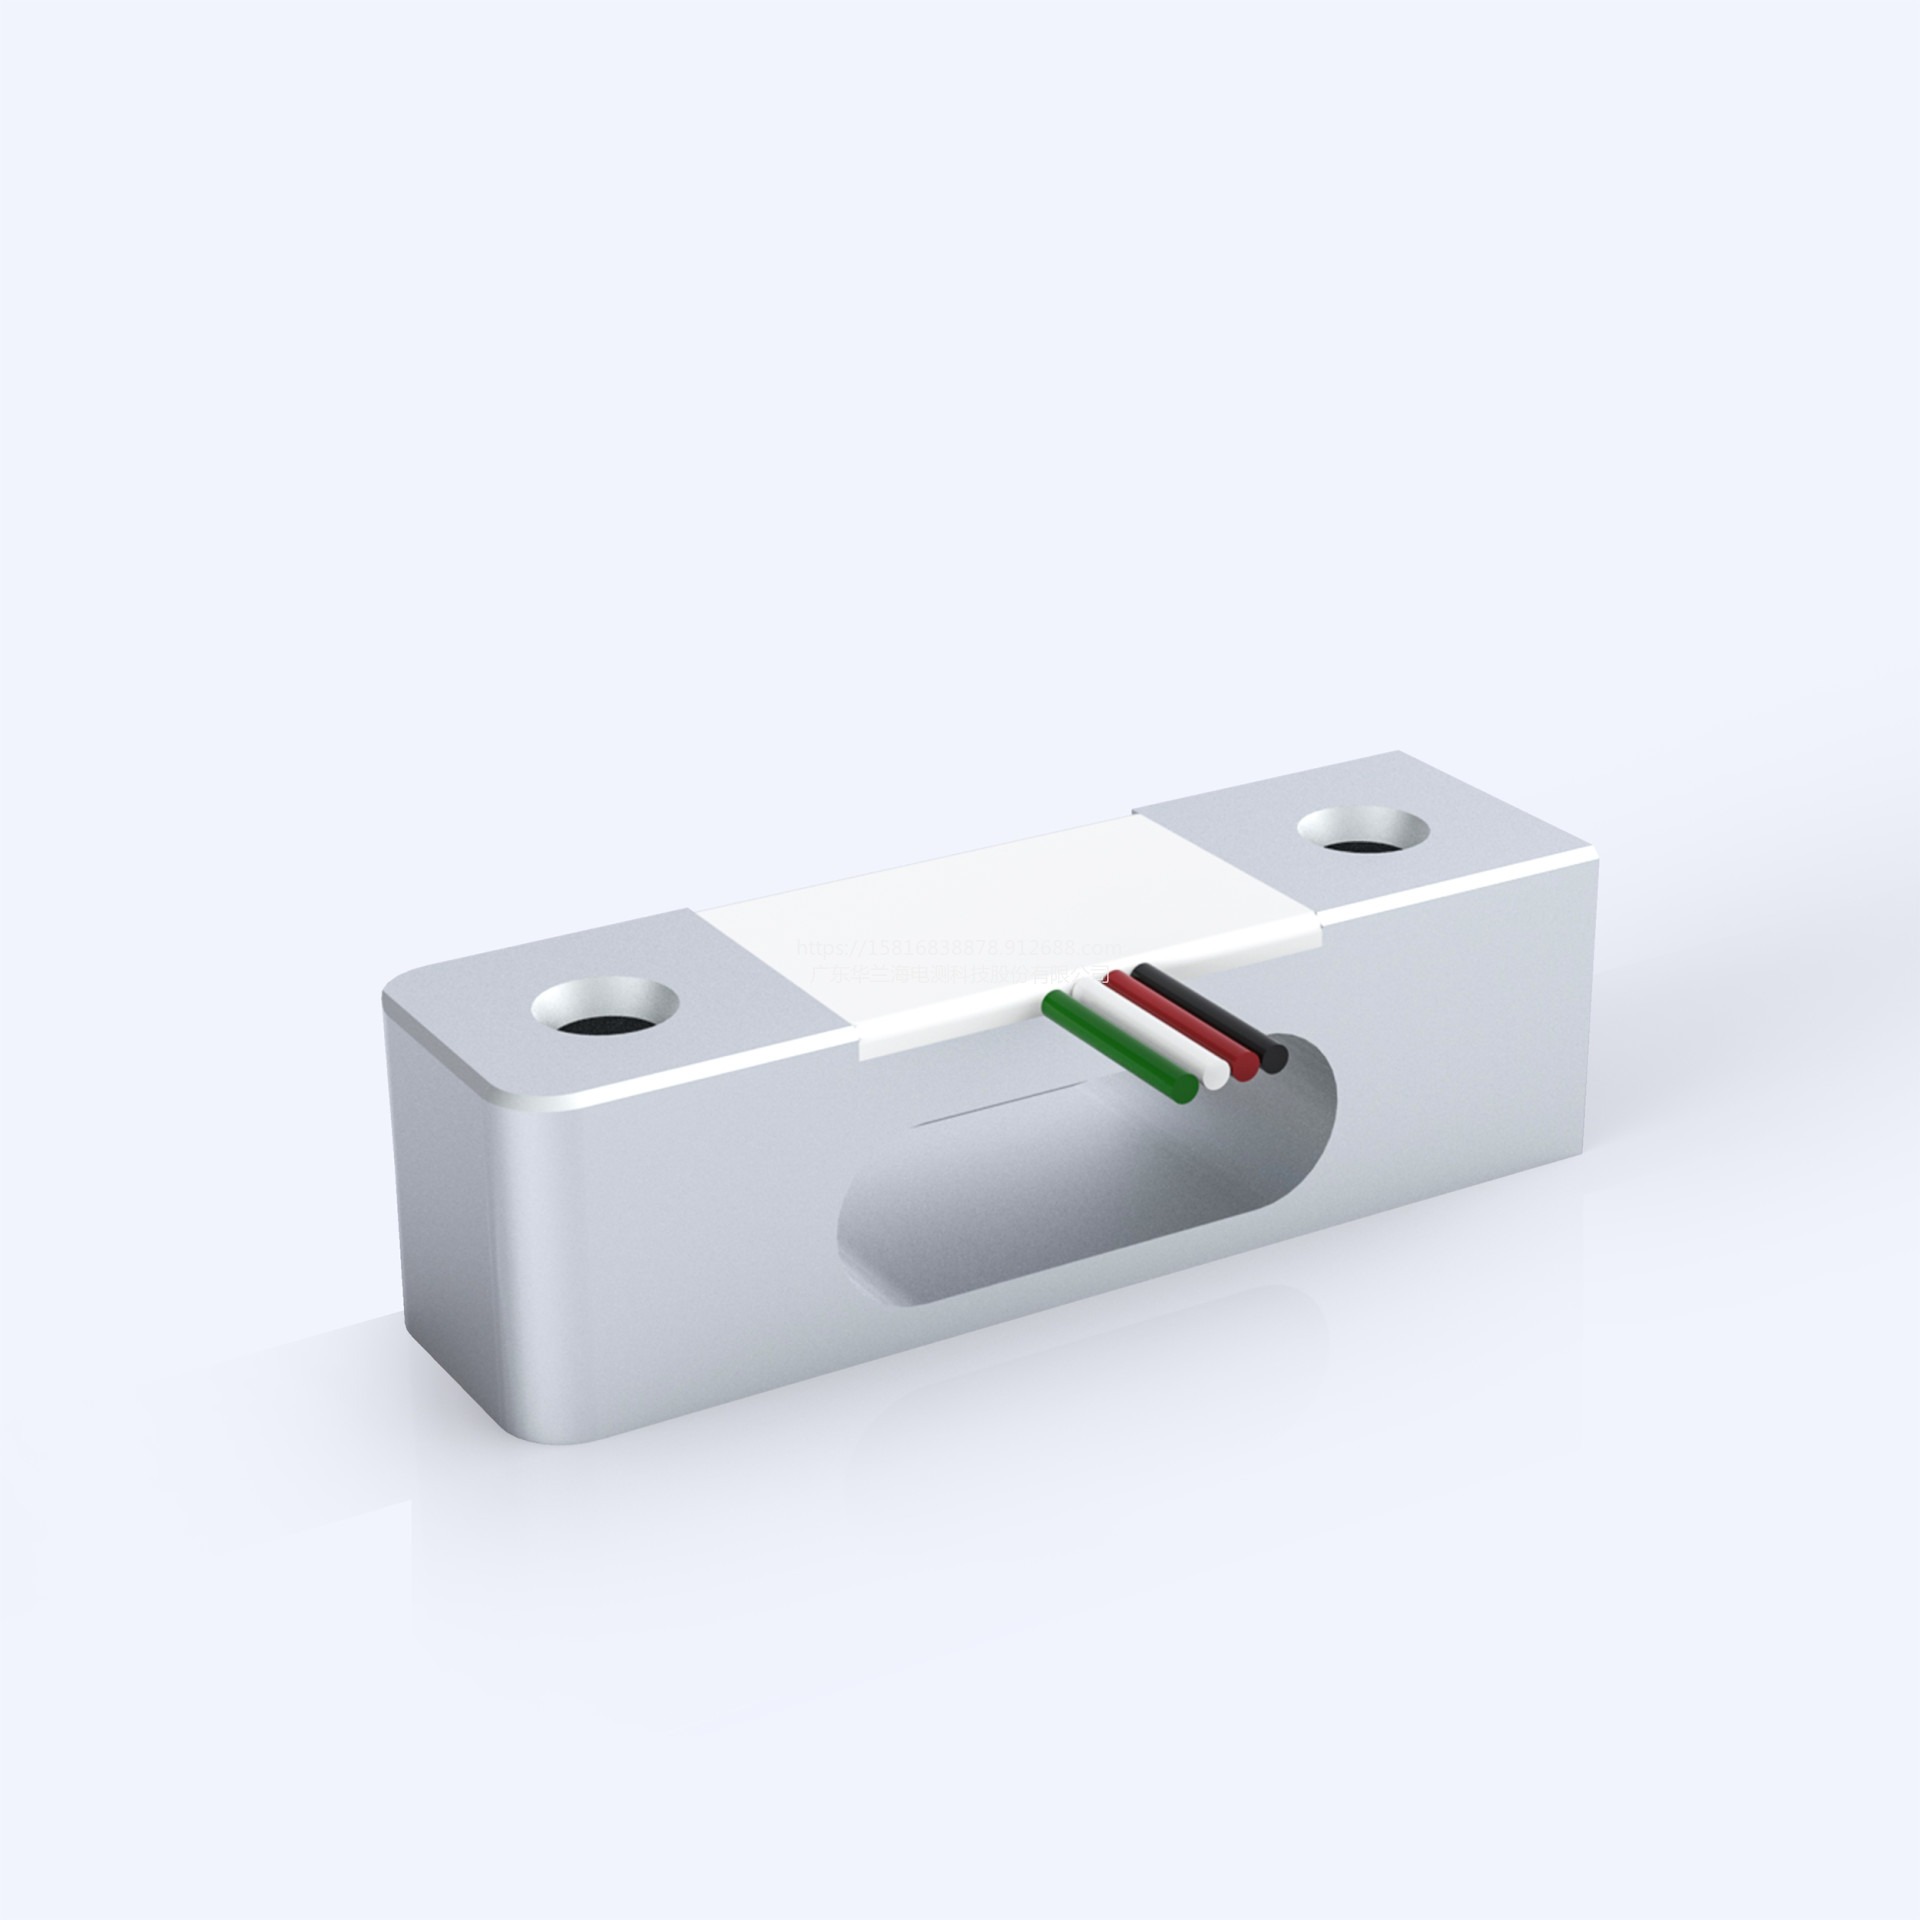 微型传感器 华兰海/HUALANHAI 超微型称量传感器 压力传感器设计图片